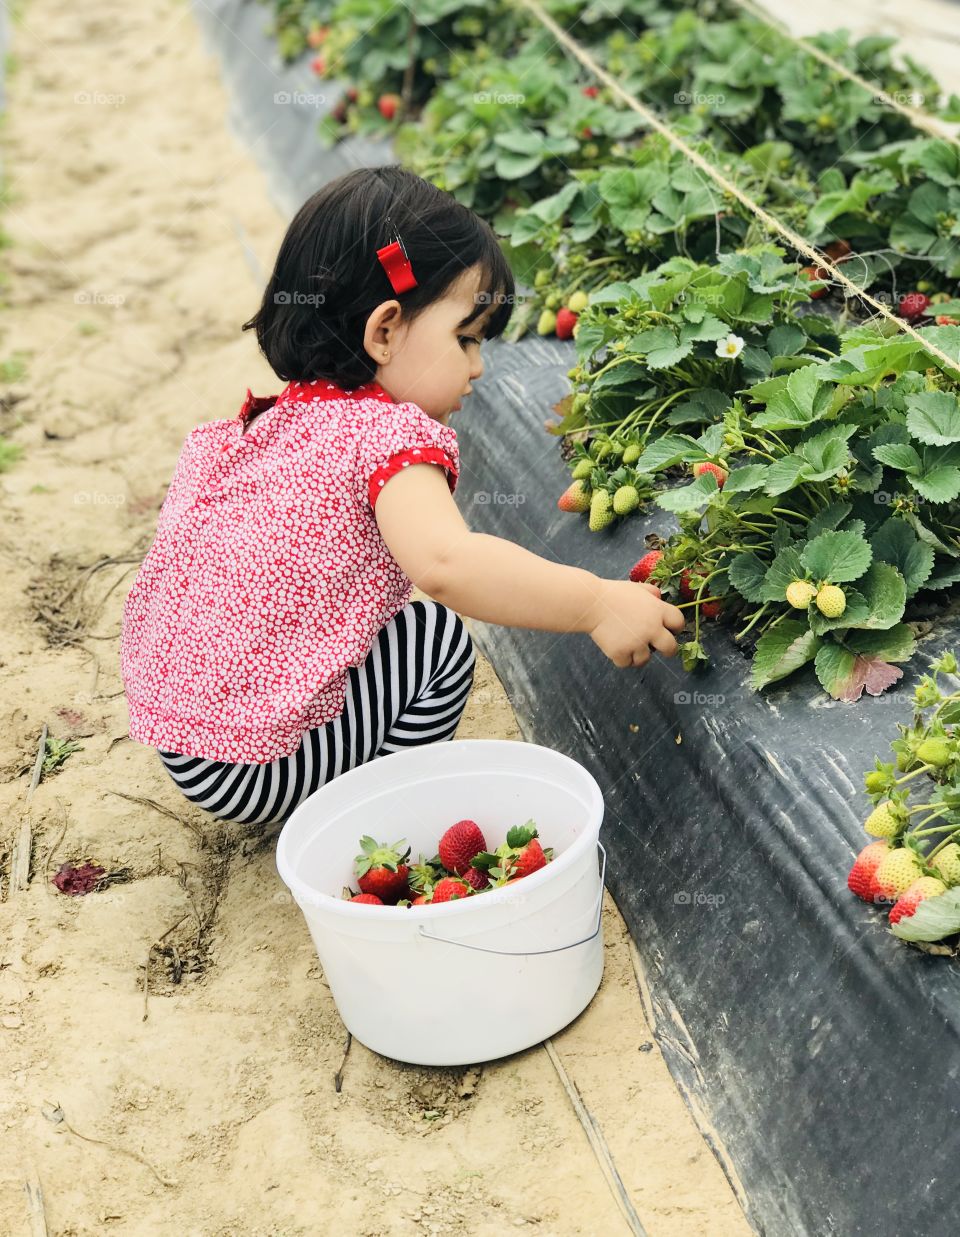 Strawberry fields 